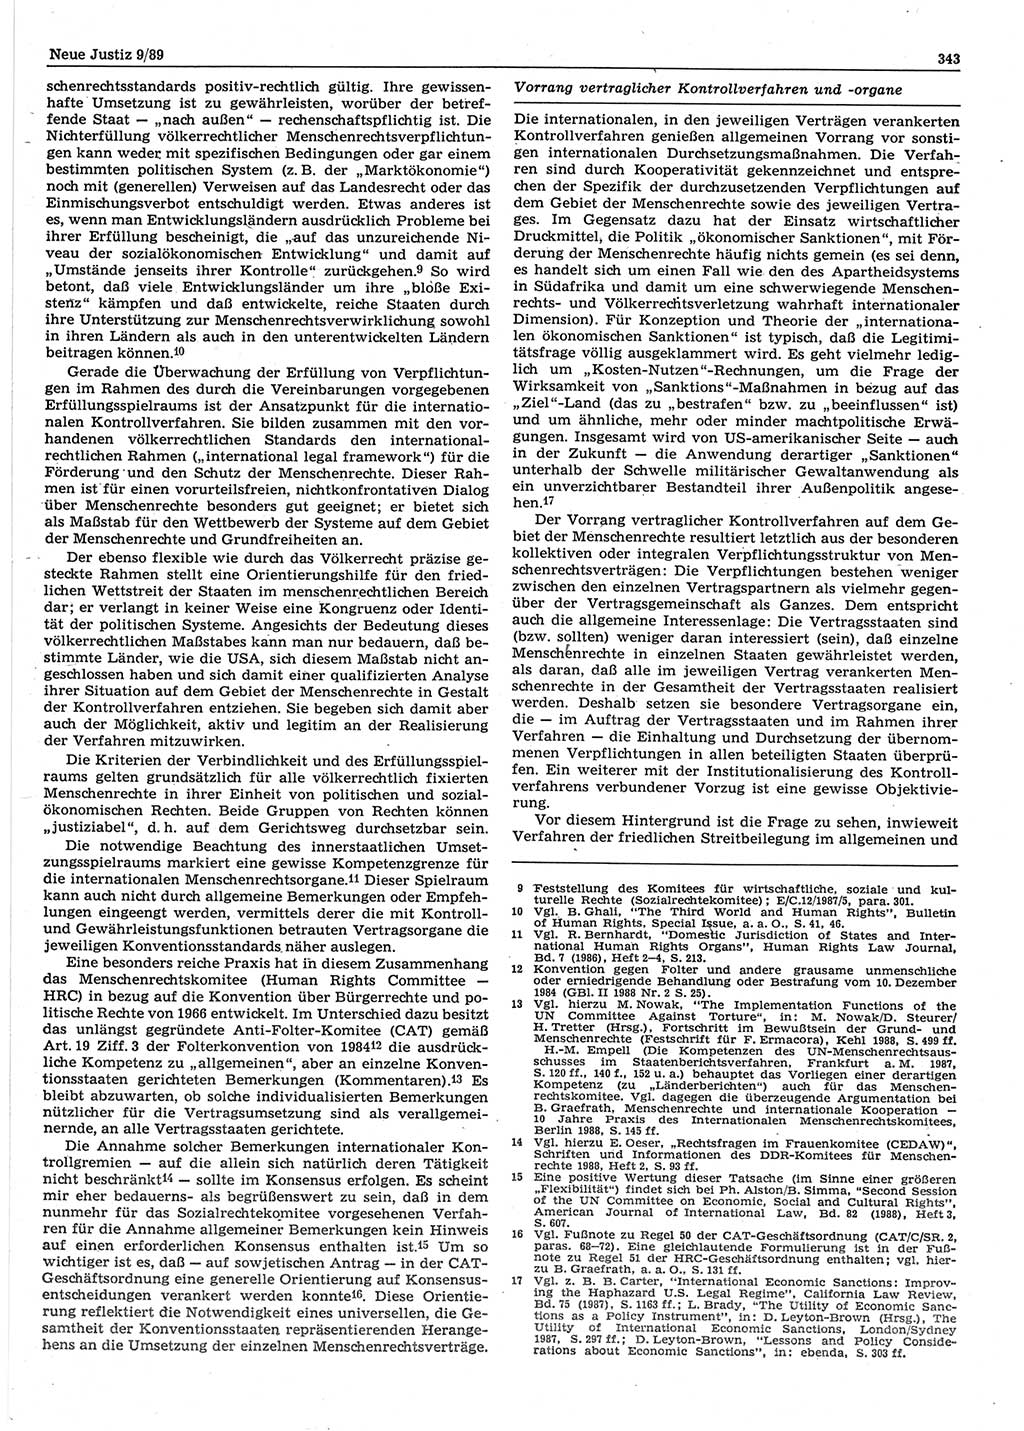 Neue Justiz (NJ), Zeitschrift für sozialistisches Recht und Gesetzlichkeit [Deutsche Demokratische Republik (DDR)], 43. Jahrgang 1989, Seite 343 (NJ DDR 1989, S. 343)